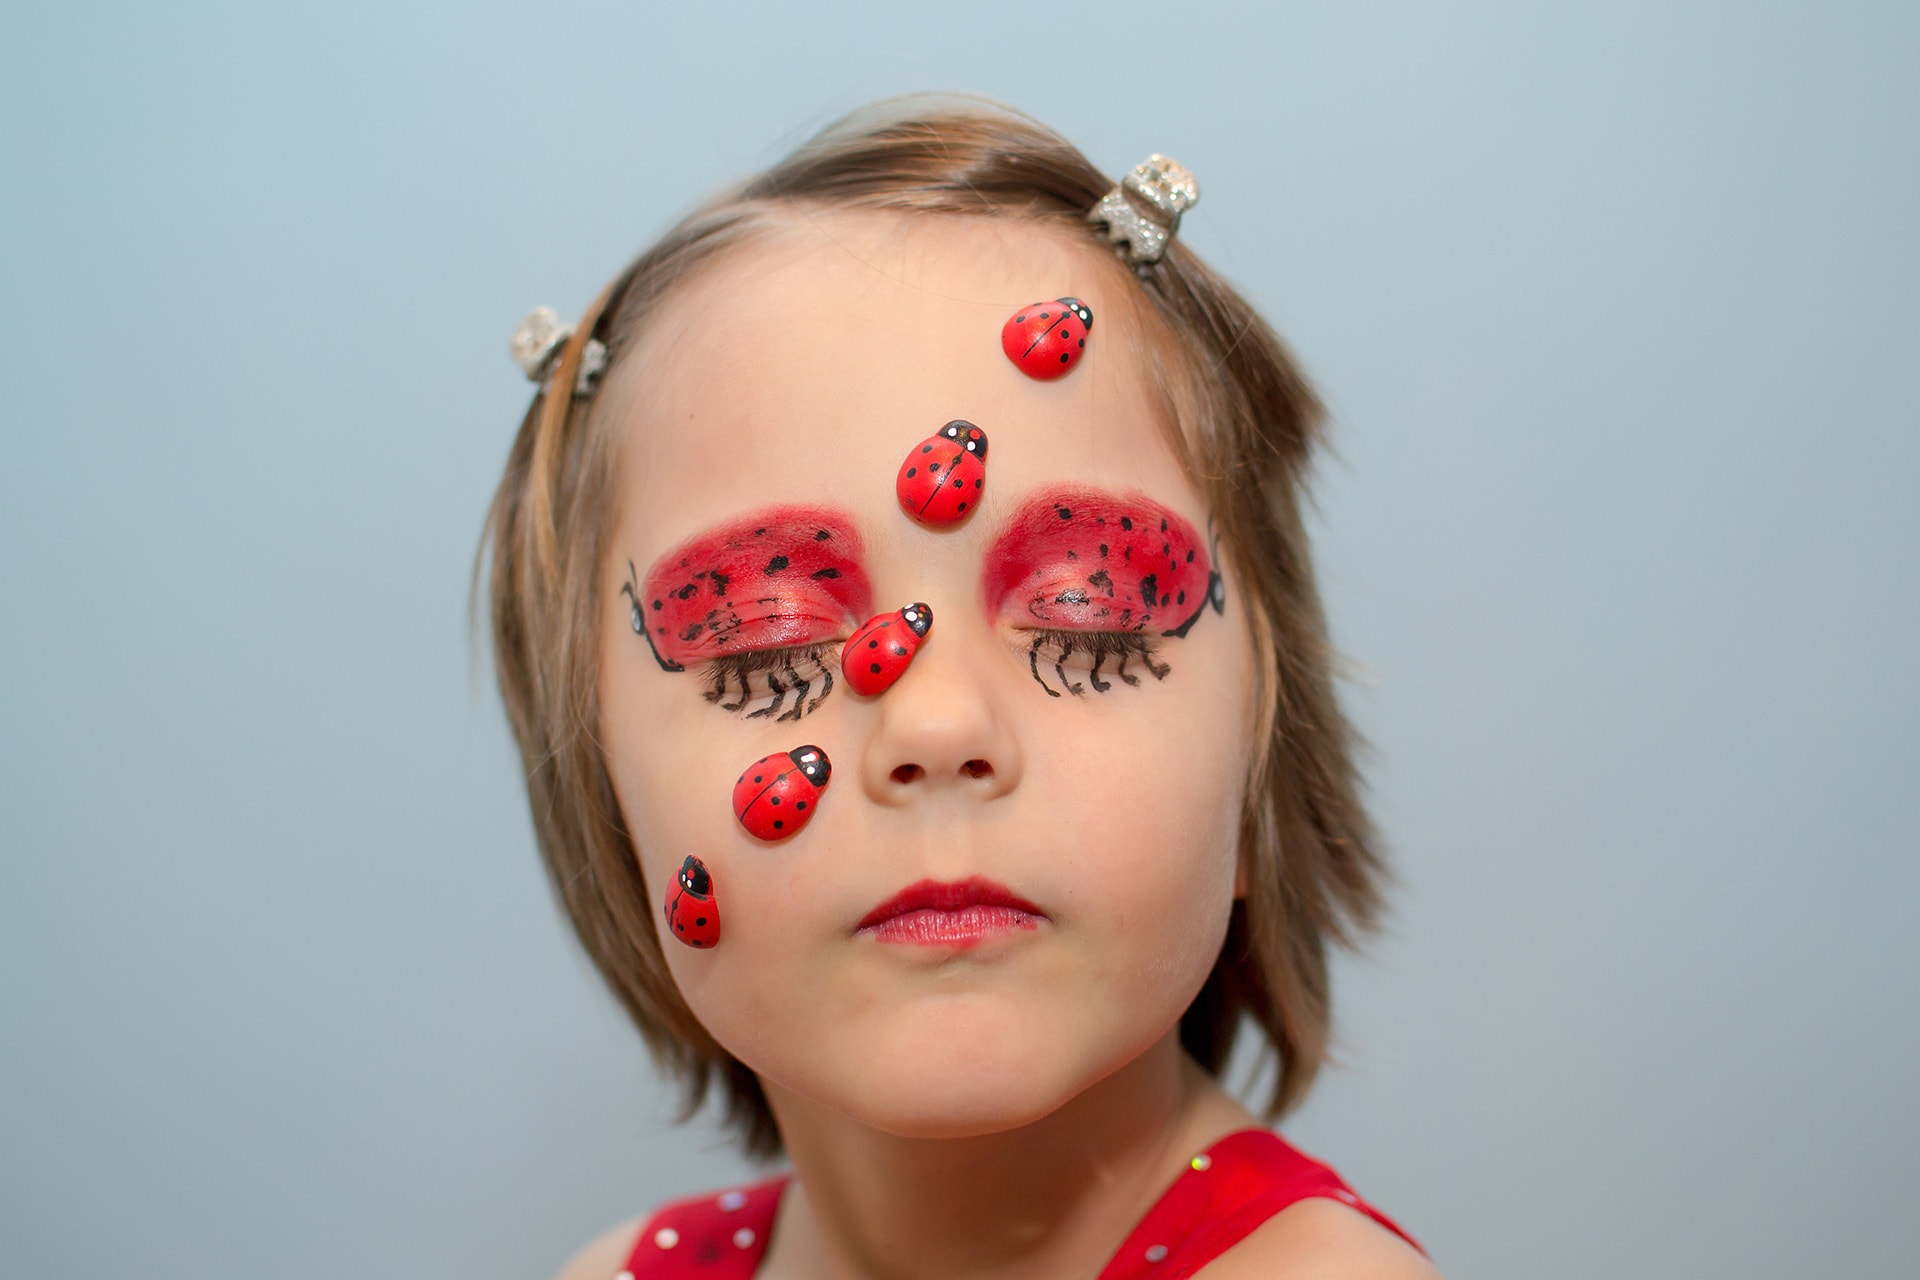 Faschings schminken | Image | Mädchen als Marienkäfer im Gesicht geschminkt - Augenlider rot mit schwarzen Punkten. Plastische Marienkäfer sind aufgeklebt, quer über Wange und Stirn